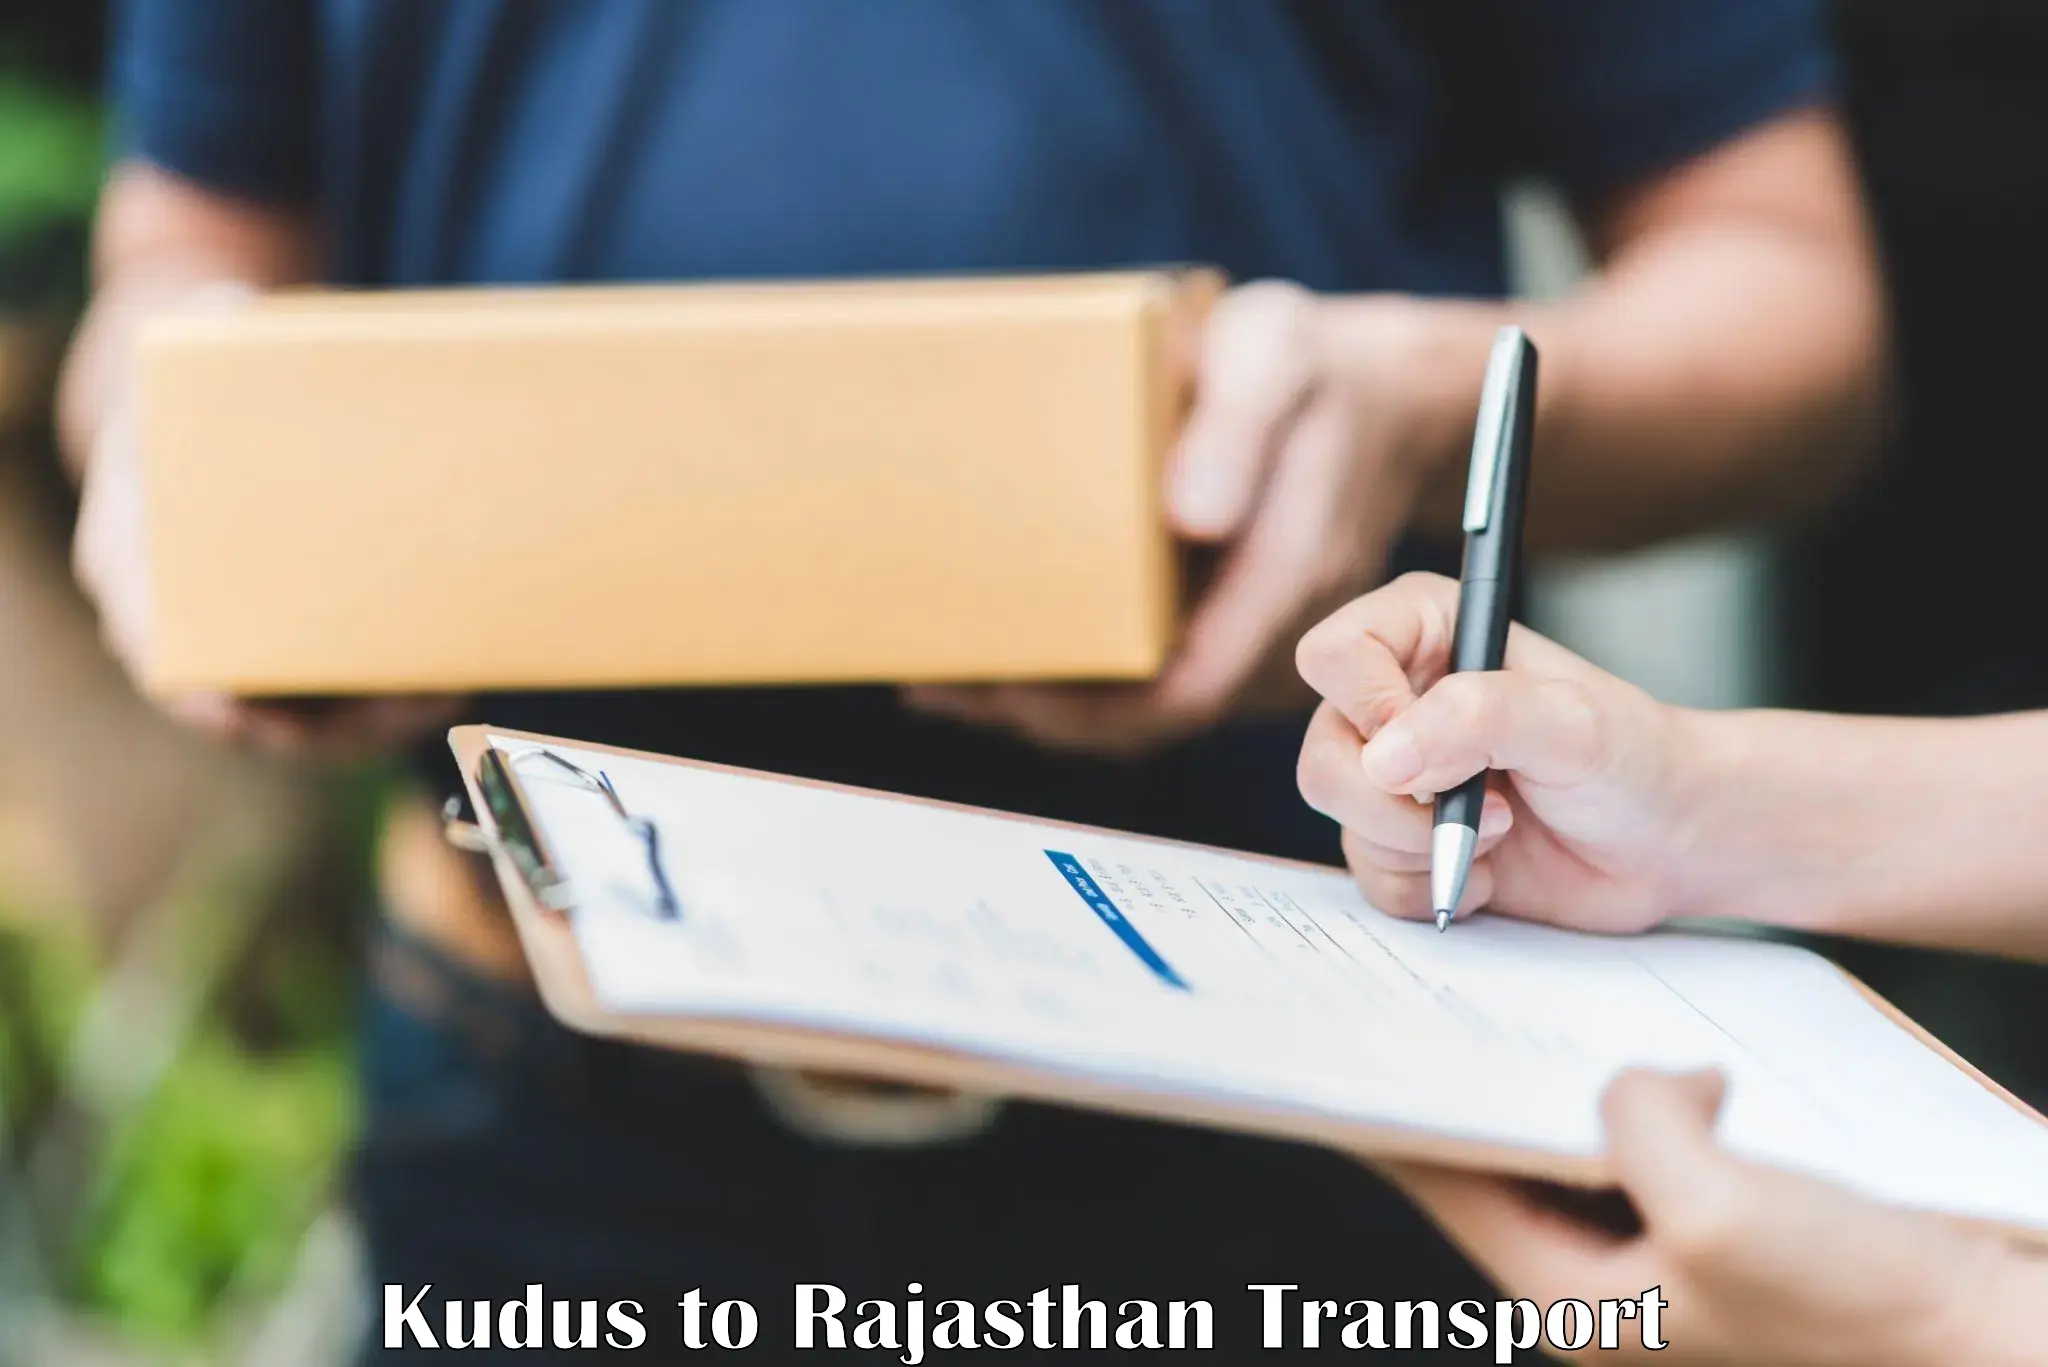 Nearest transport service Kudus to Bandikui